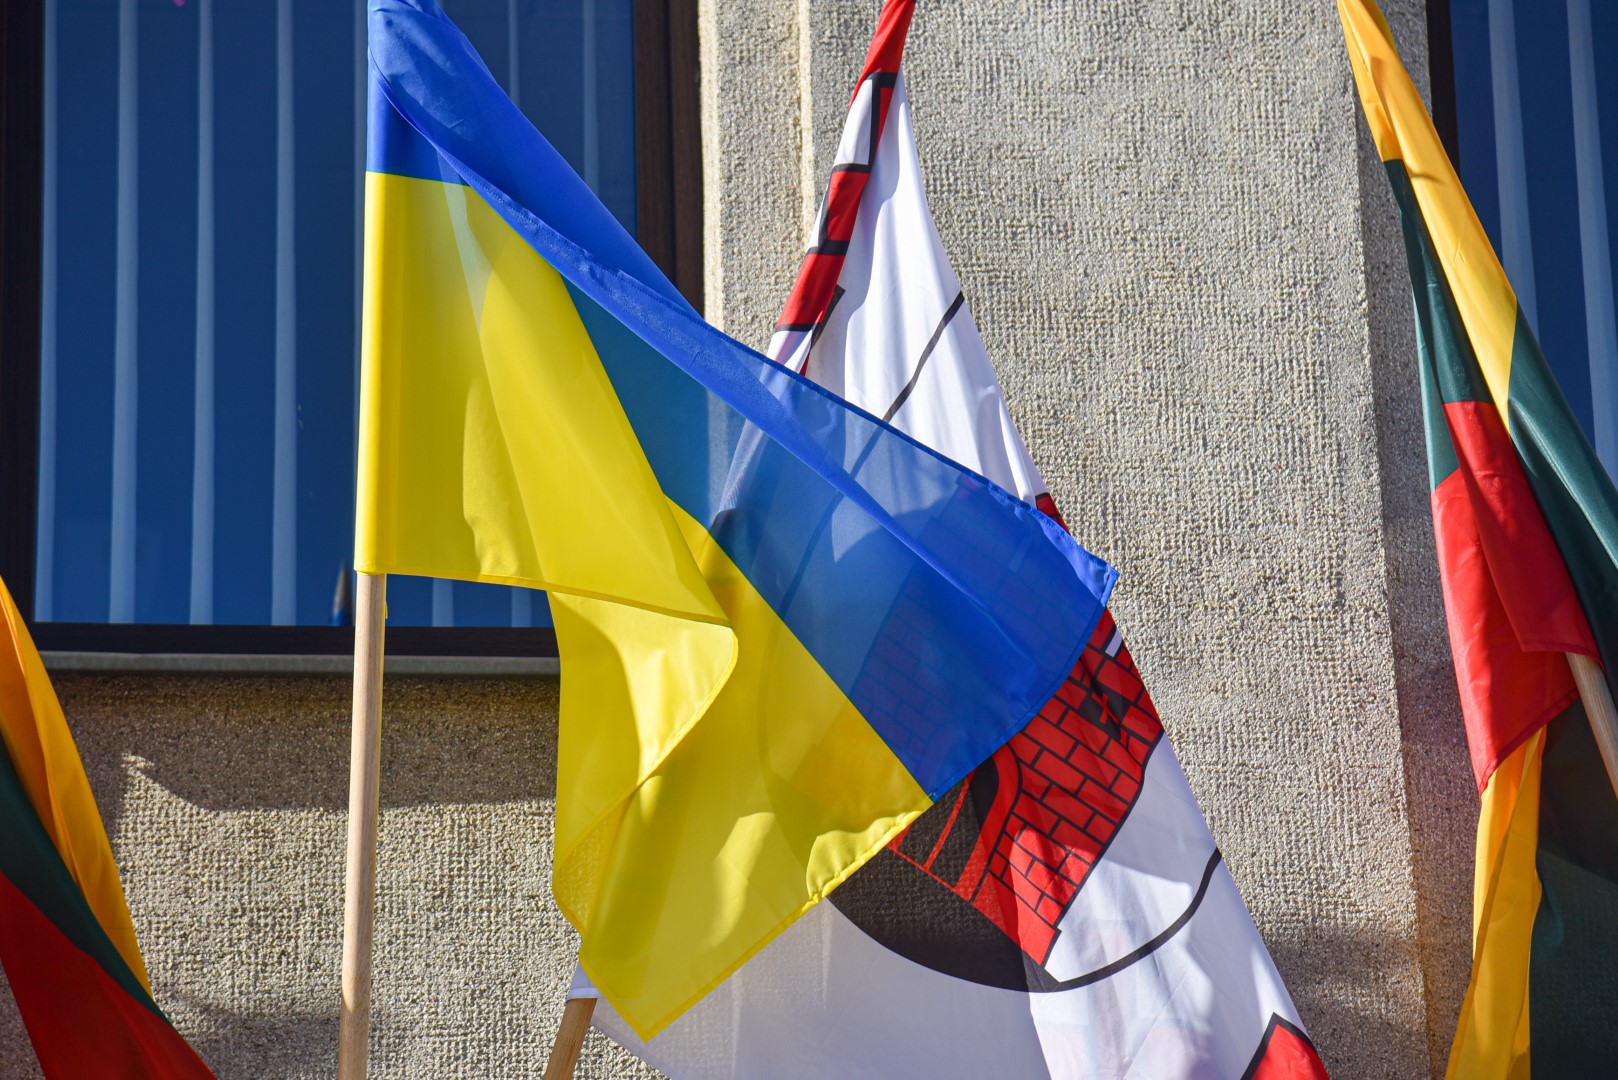 Europos Sąjungos tarybos sprendimu Ukrainos karo pabėgėliams pritaikius laikinąją apsaugą metams, artėja diena, kai daliai ukrainiečių leidimai baigsis galioti.